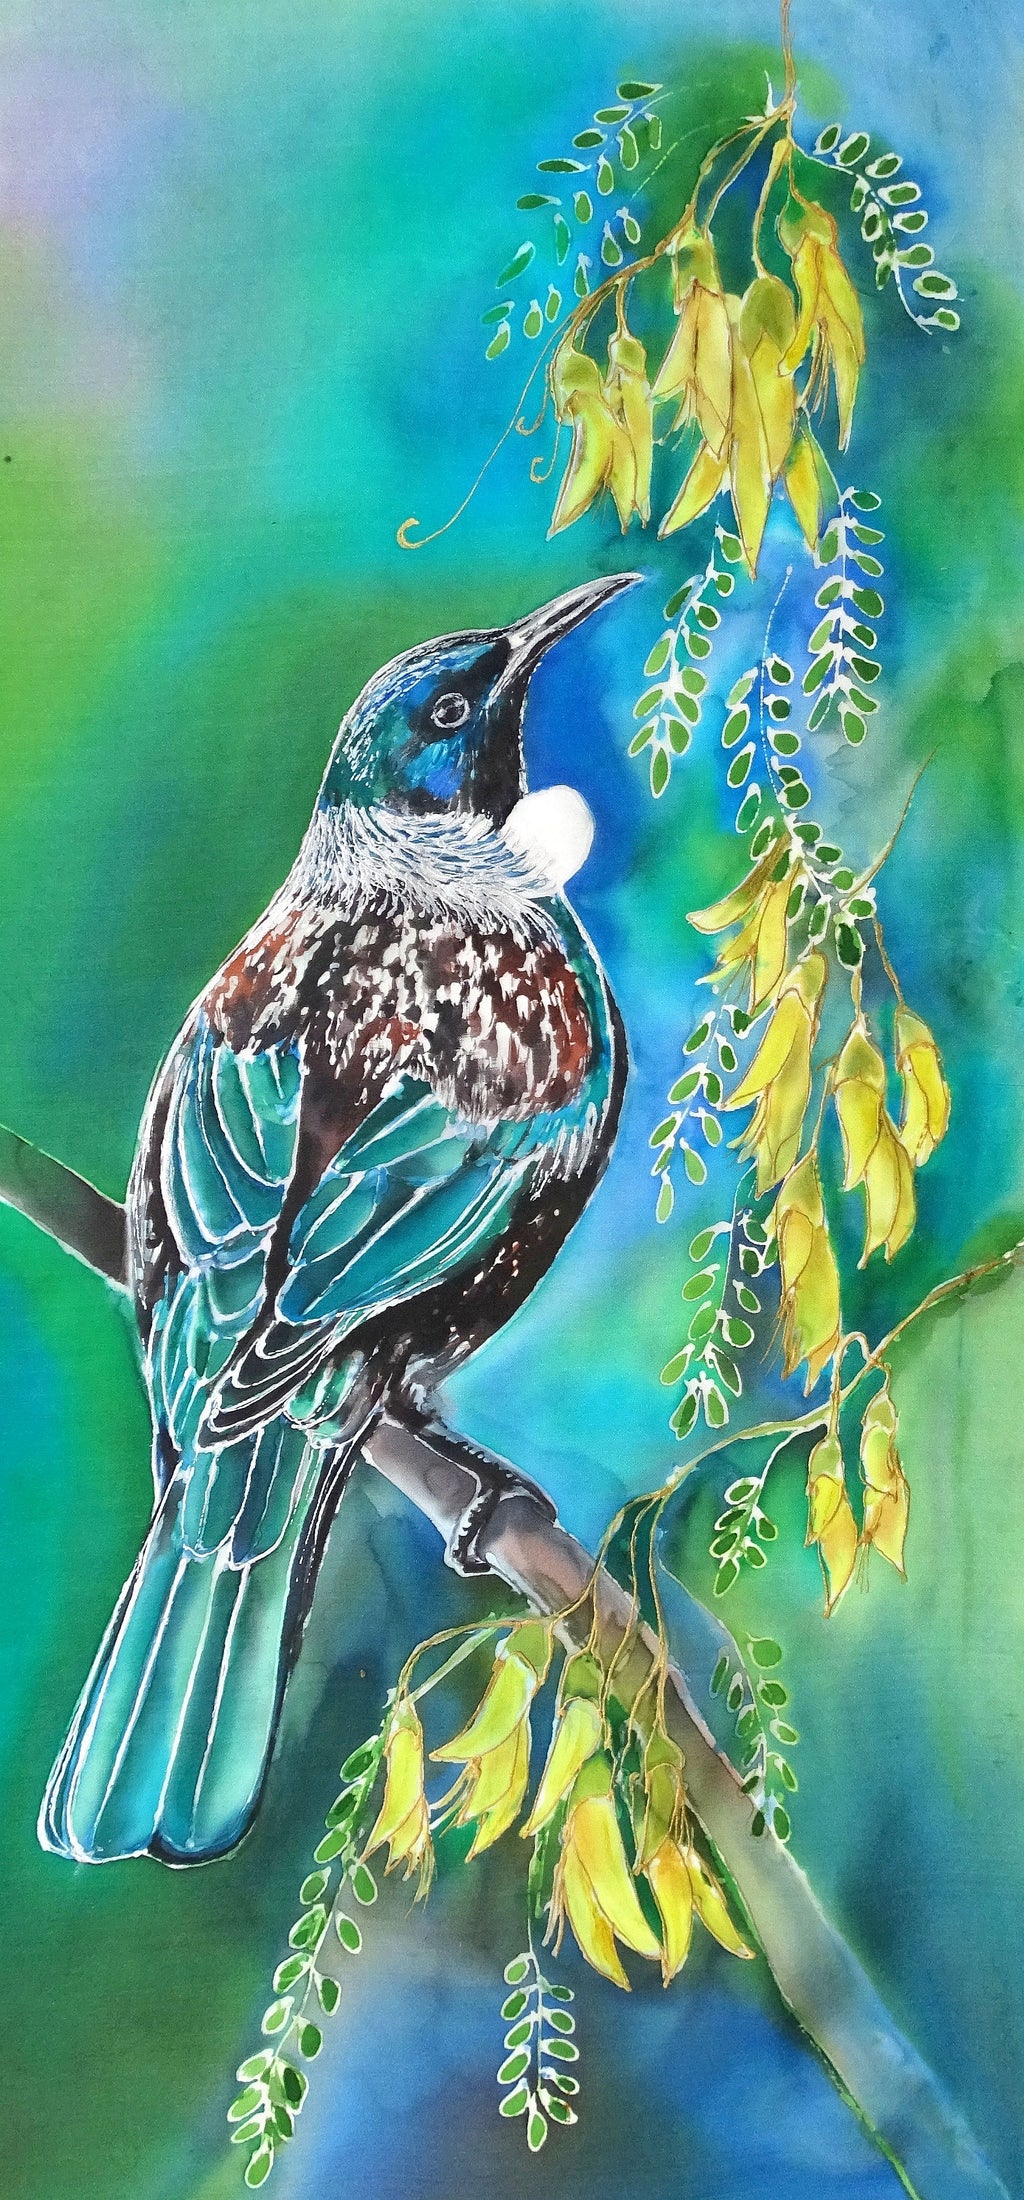 New Zealand Tui Bird on Kowhai Tree - Outdoor Garden Art Panel